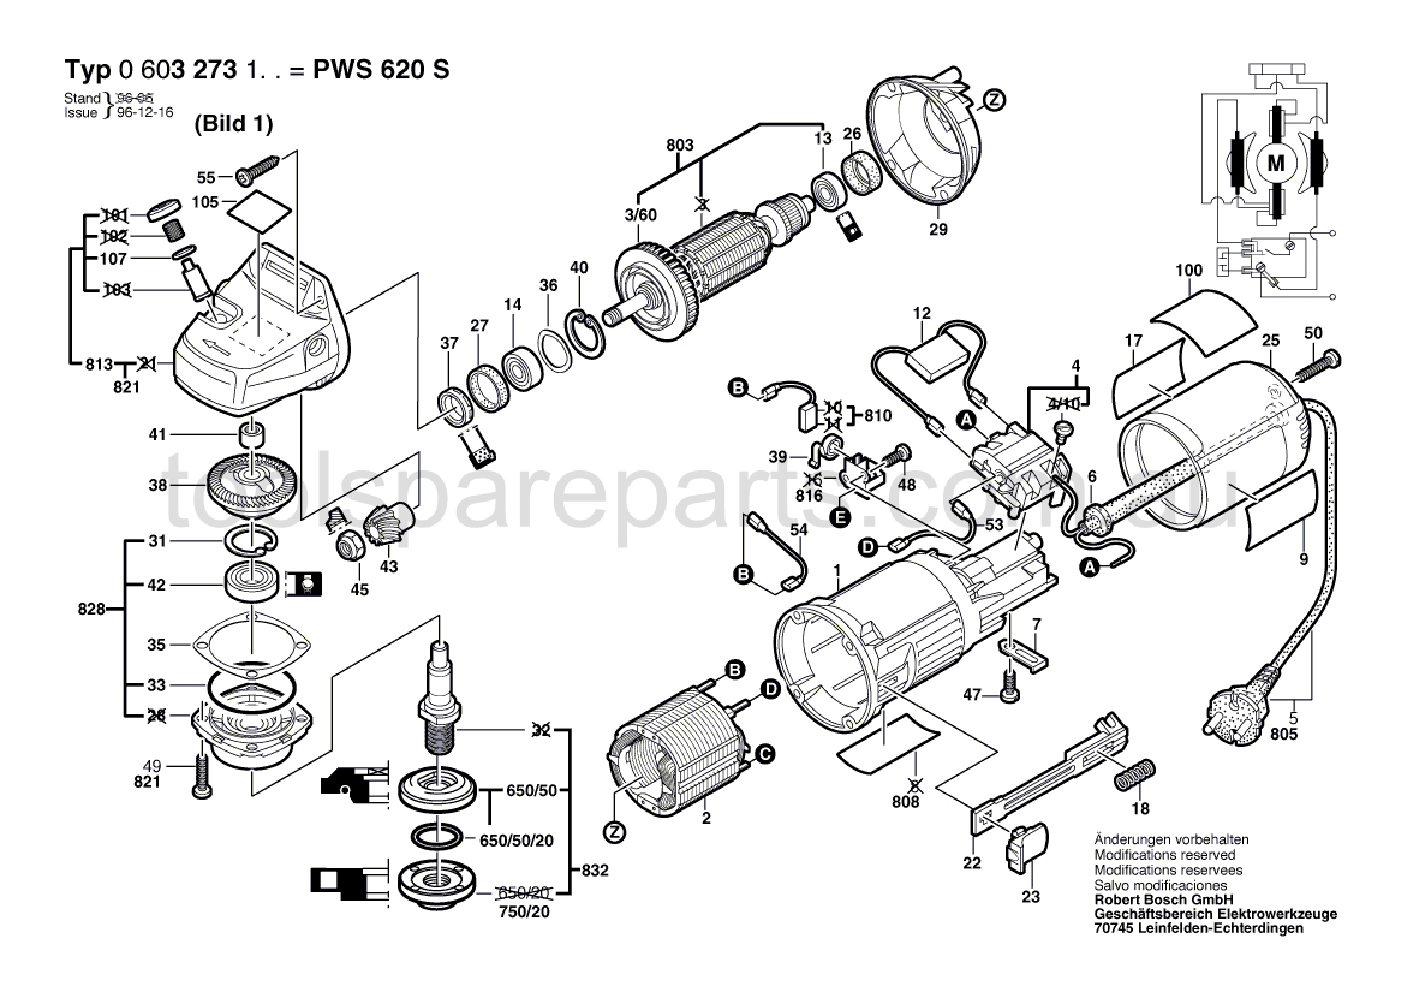 Bosch PWS 620 S 0603273137  Diagram 1